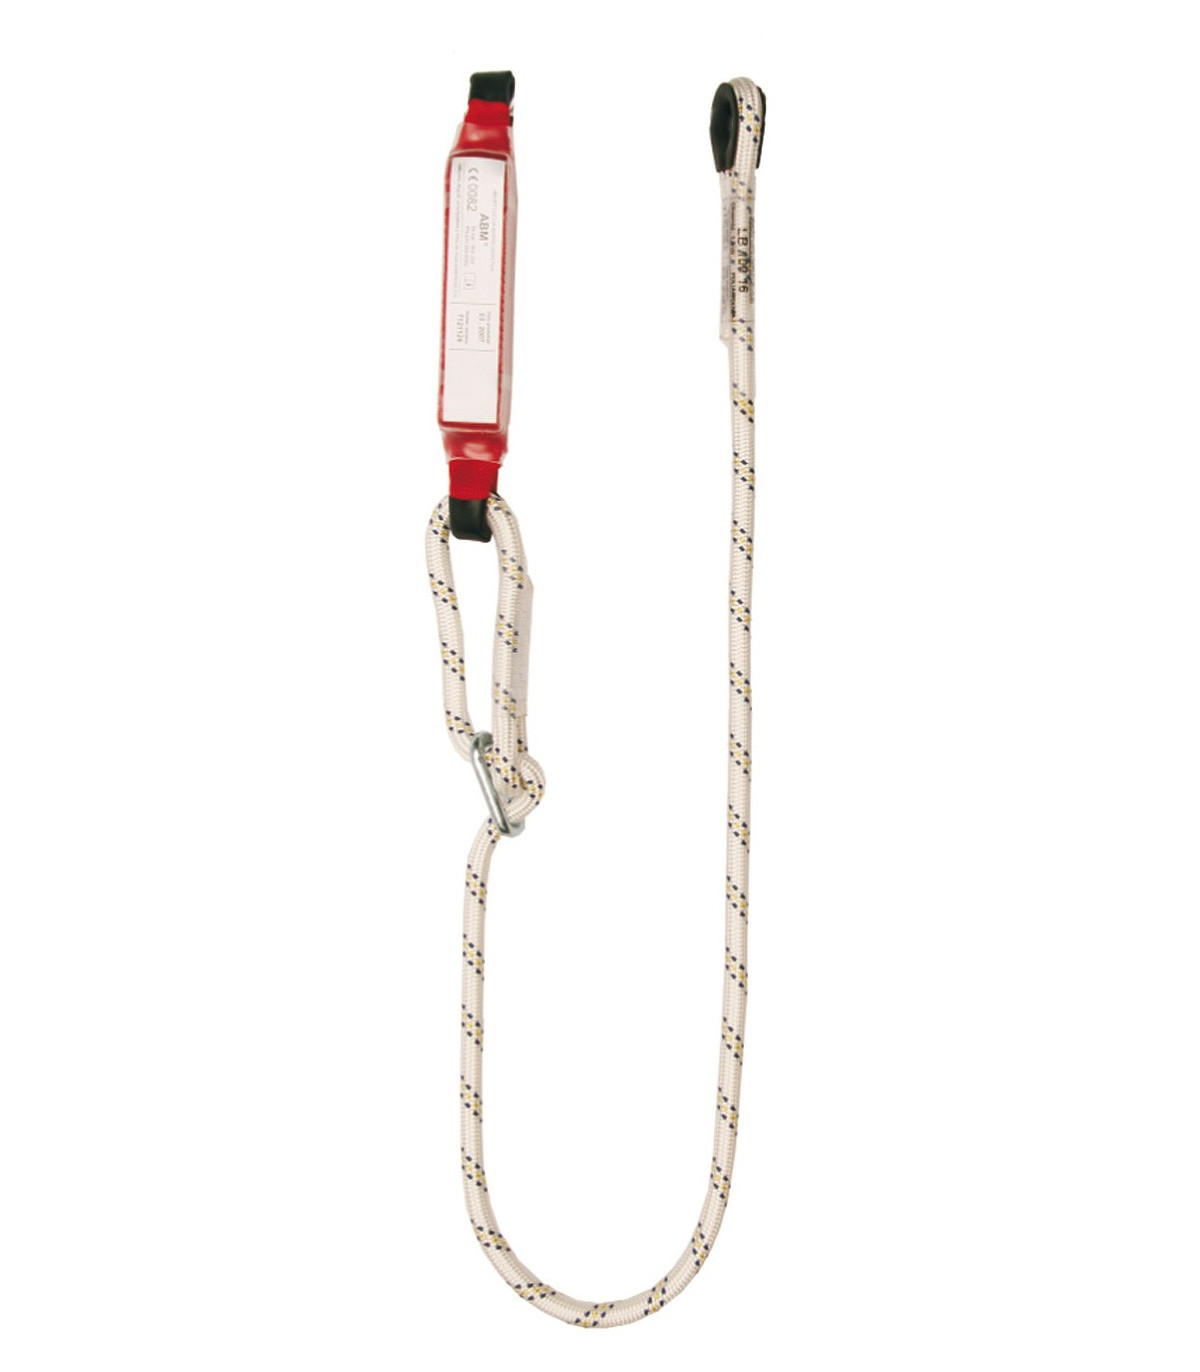 Adjustable rope lanyard Ø12mm, energy absorber EN354/EN355